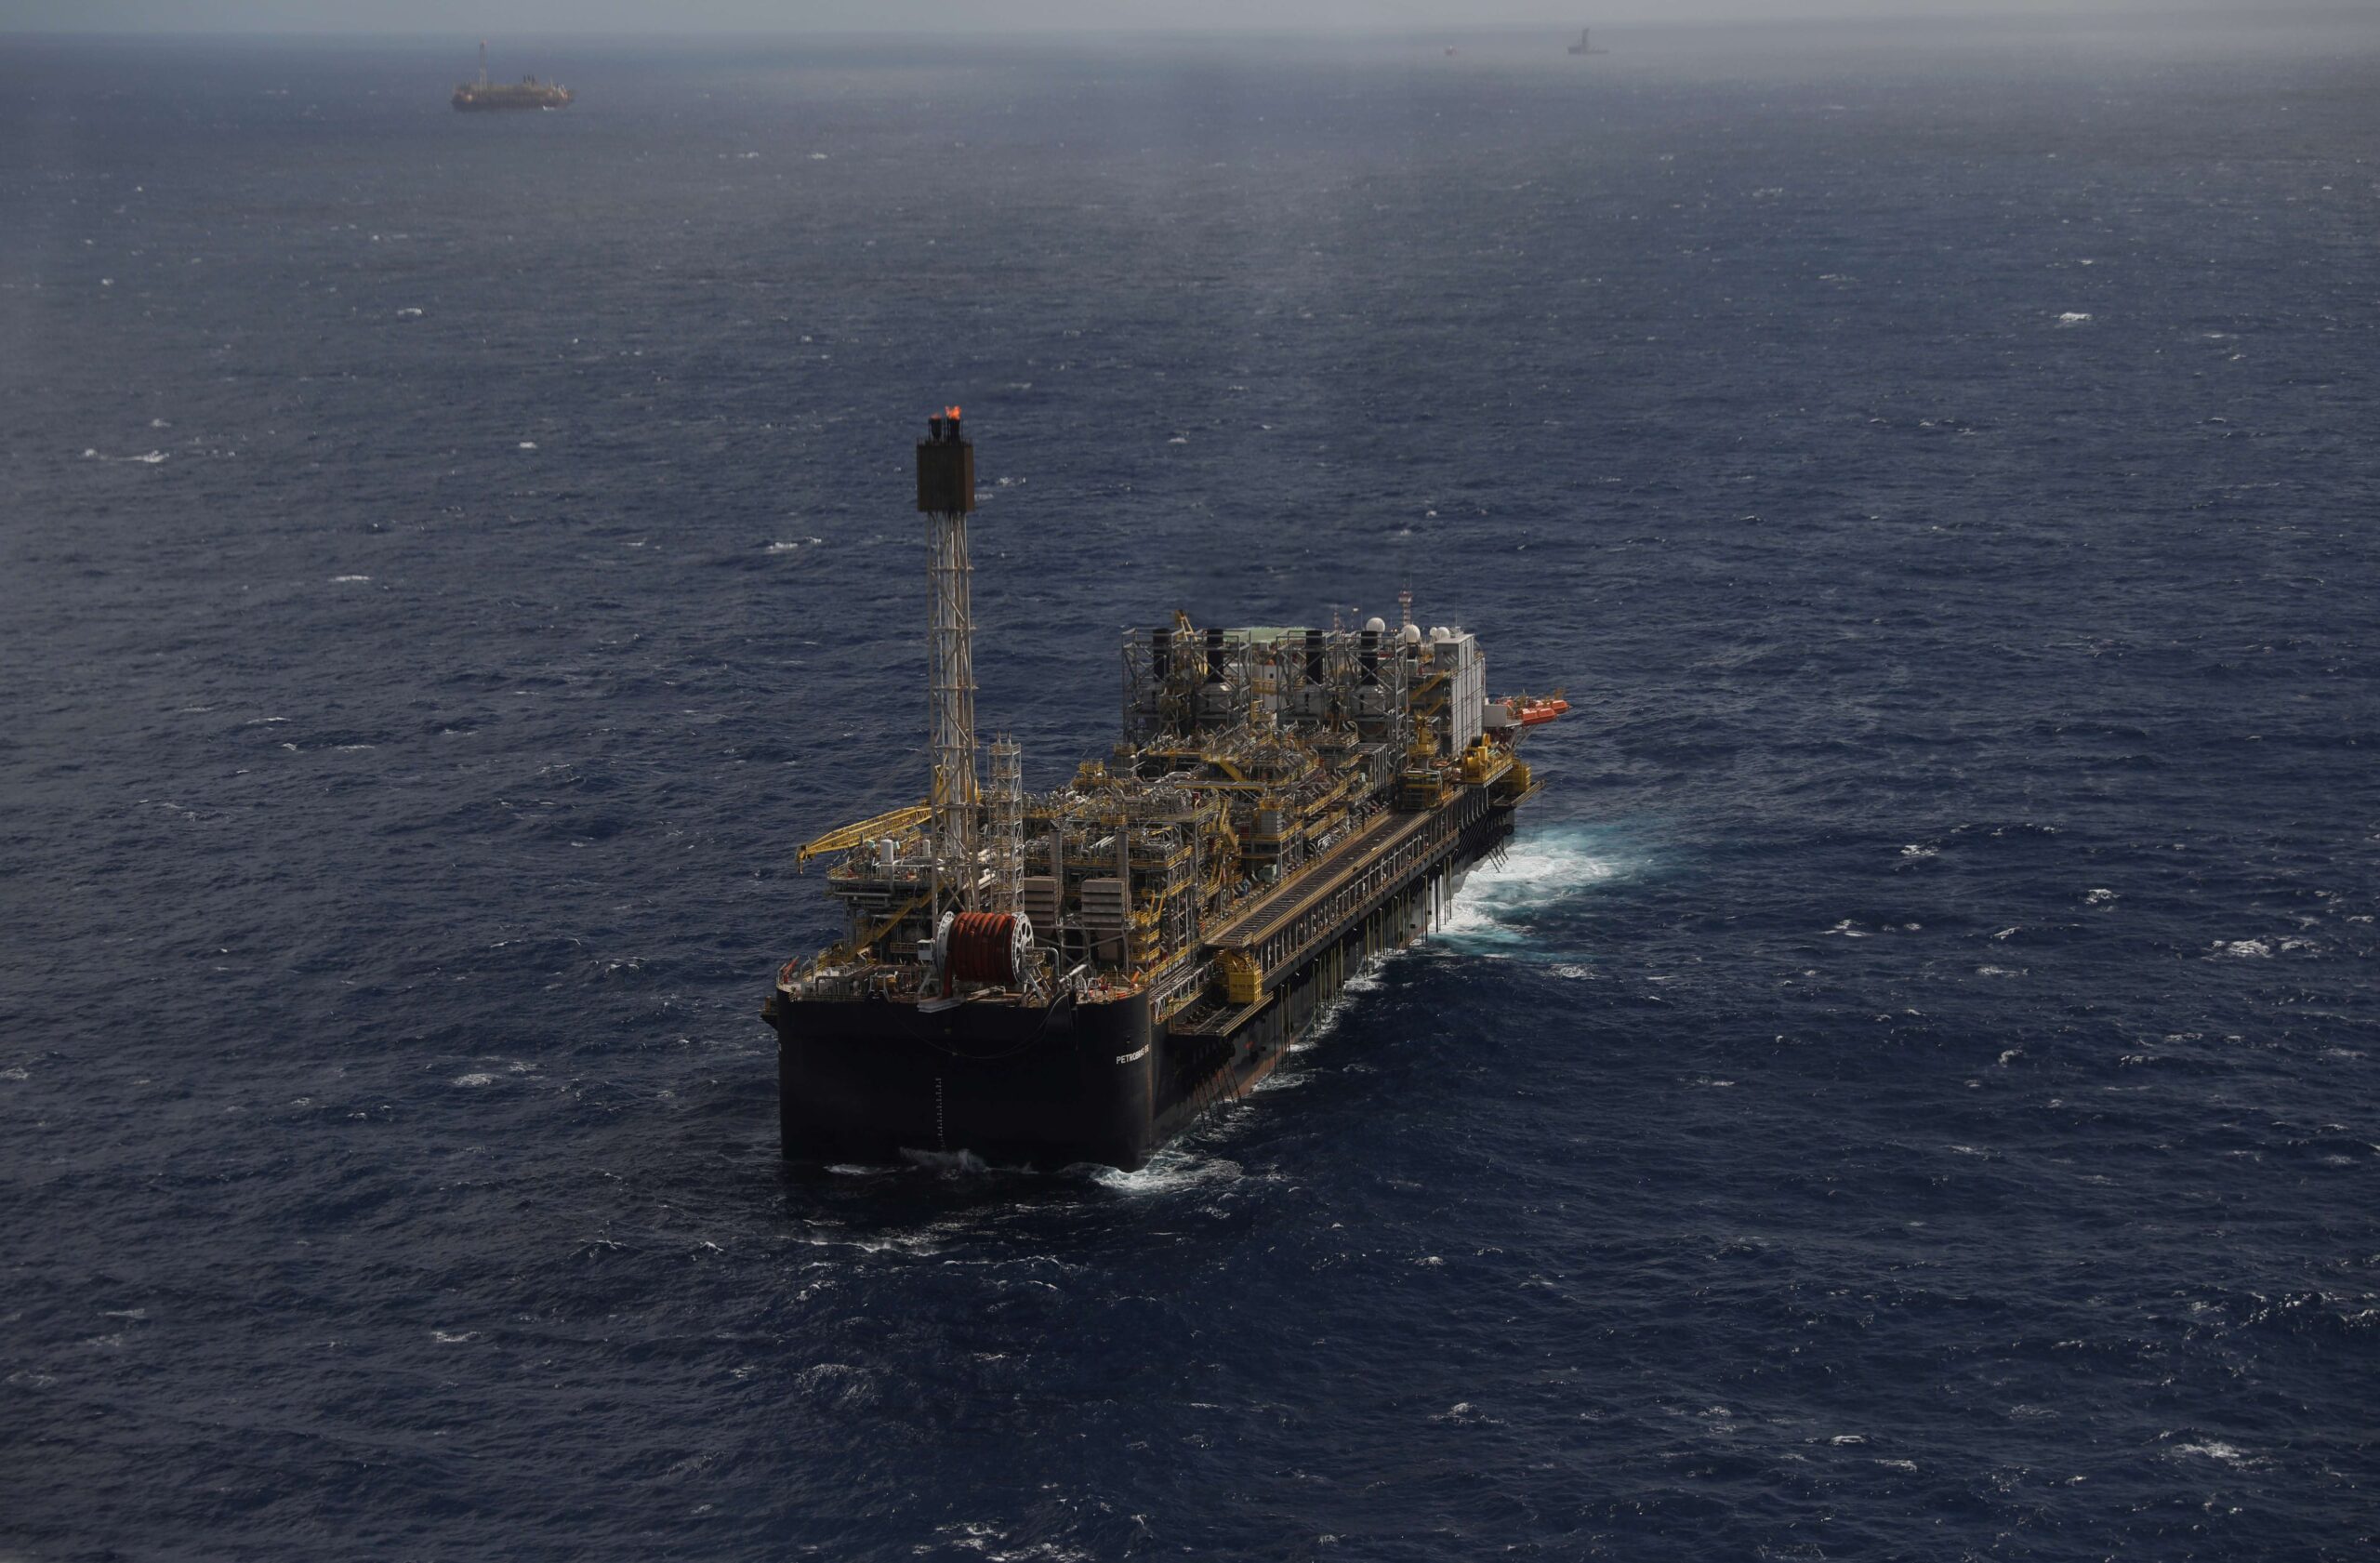 Demanda de petróleo deve atingir pico em 2029, diz IEA; excesso de oferta se aproxima